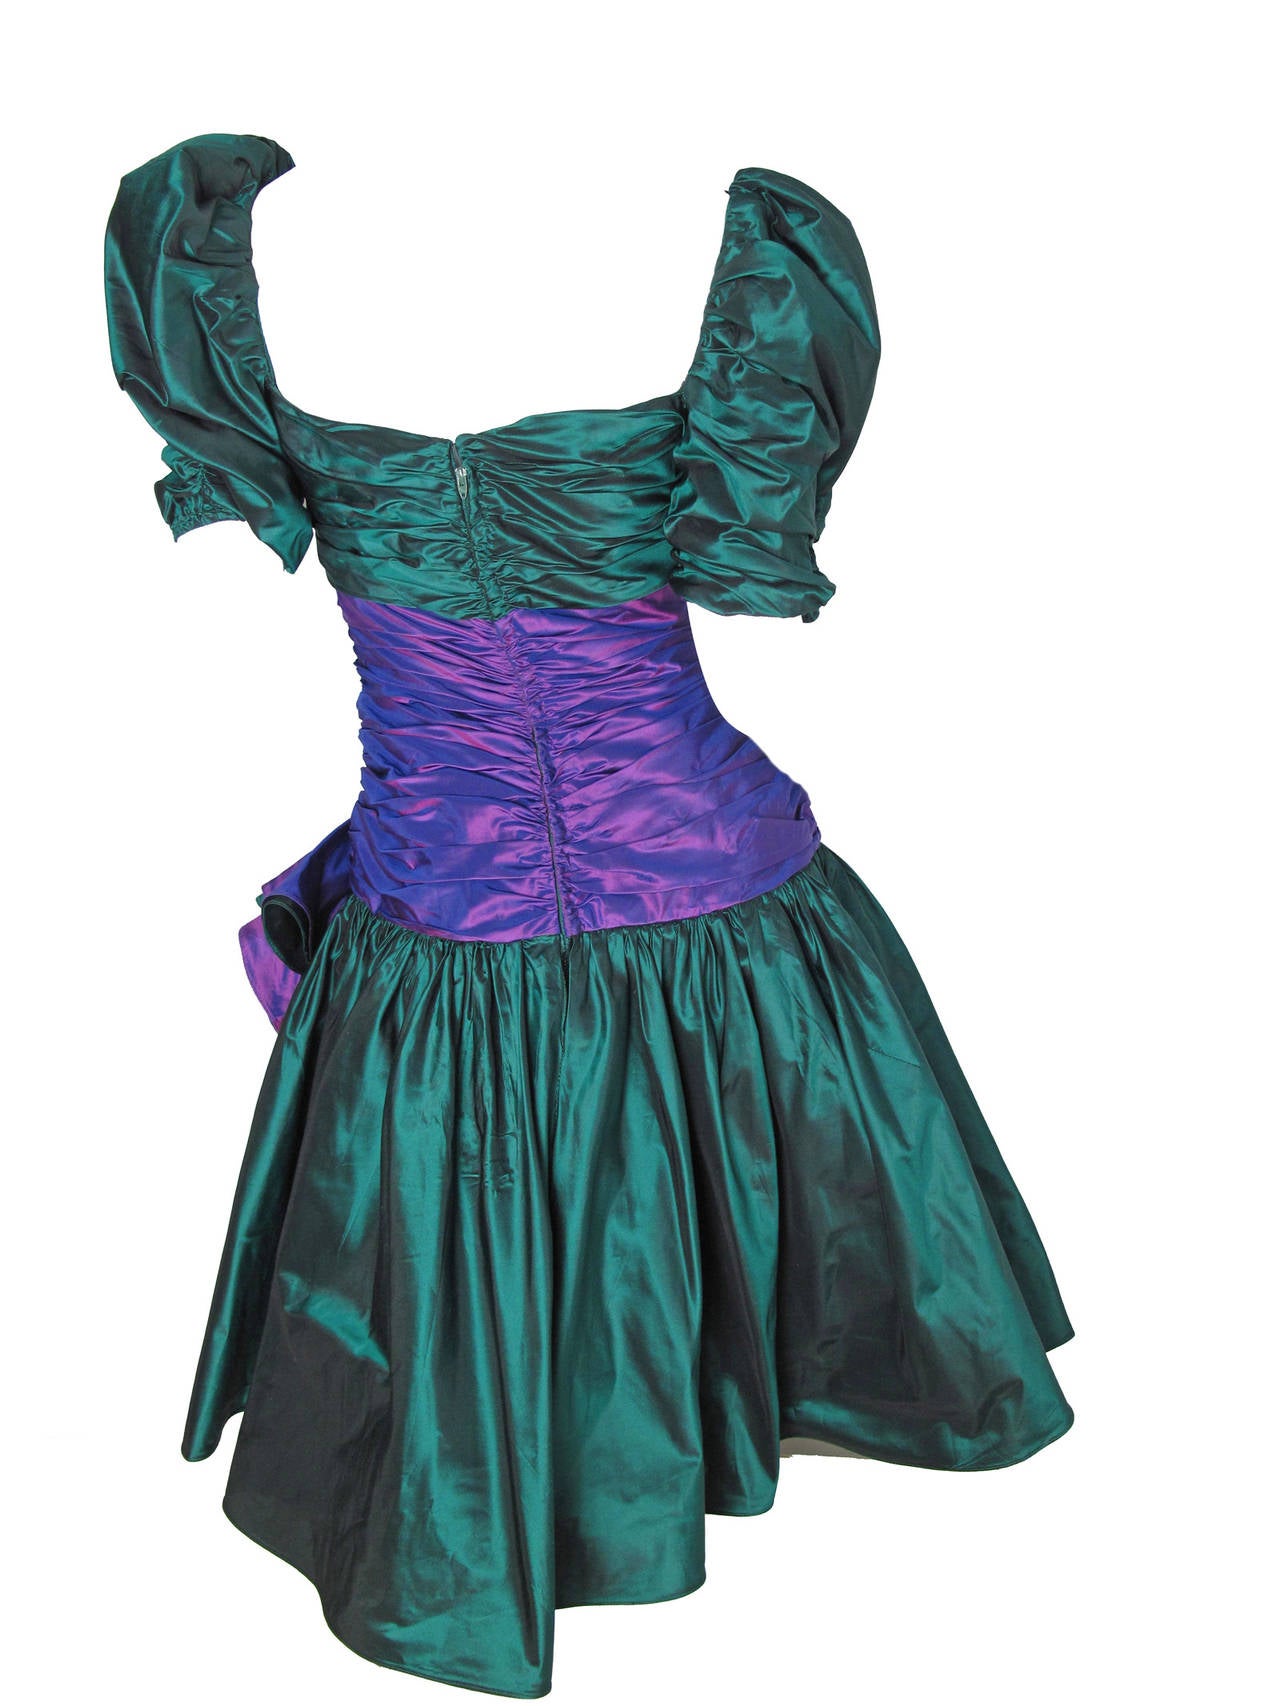 Mignon Green and Purple Taffeta Dress.  32